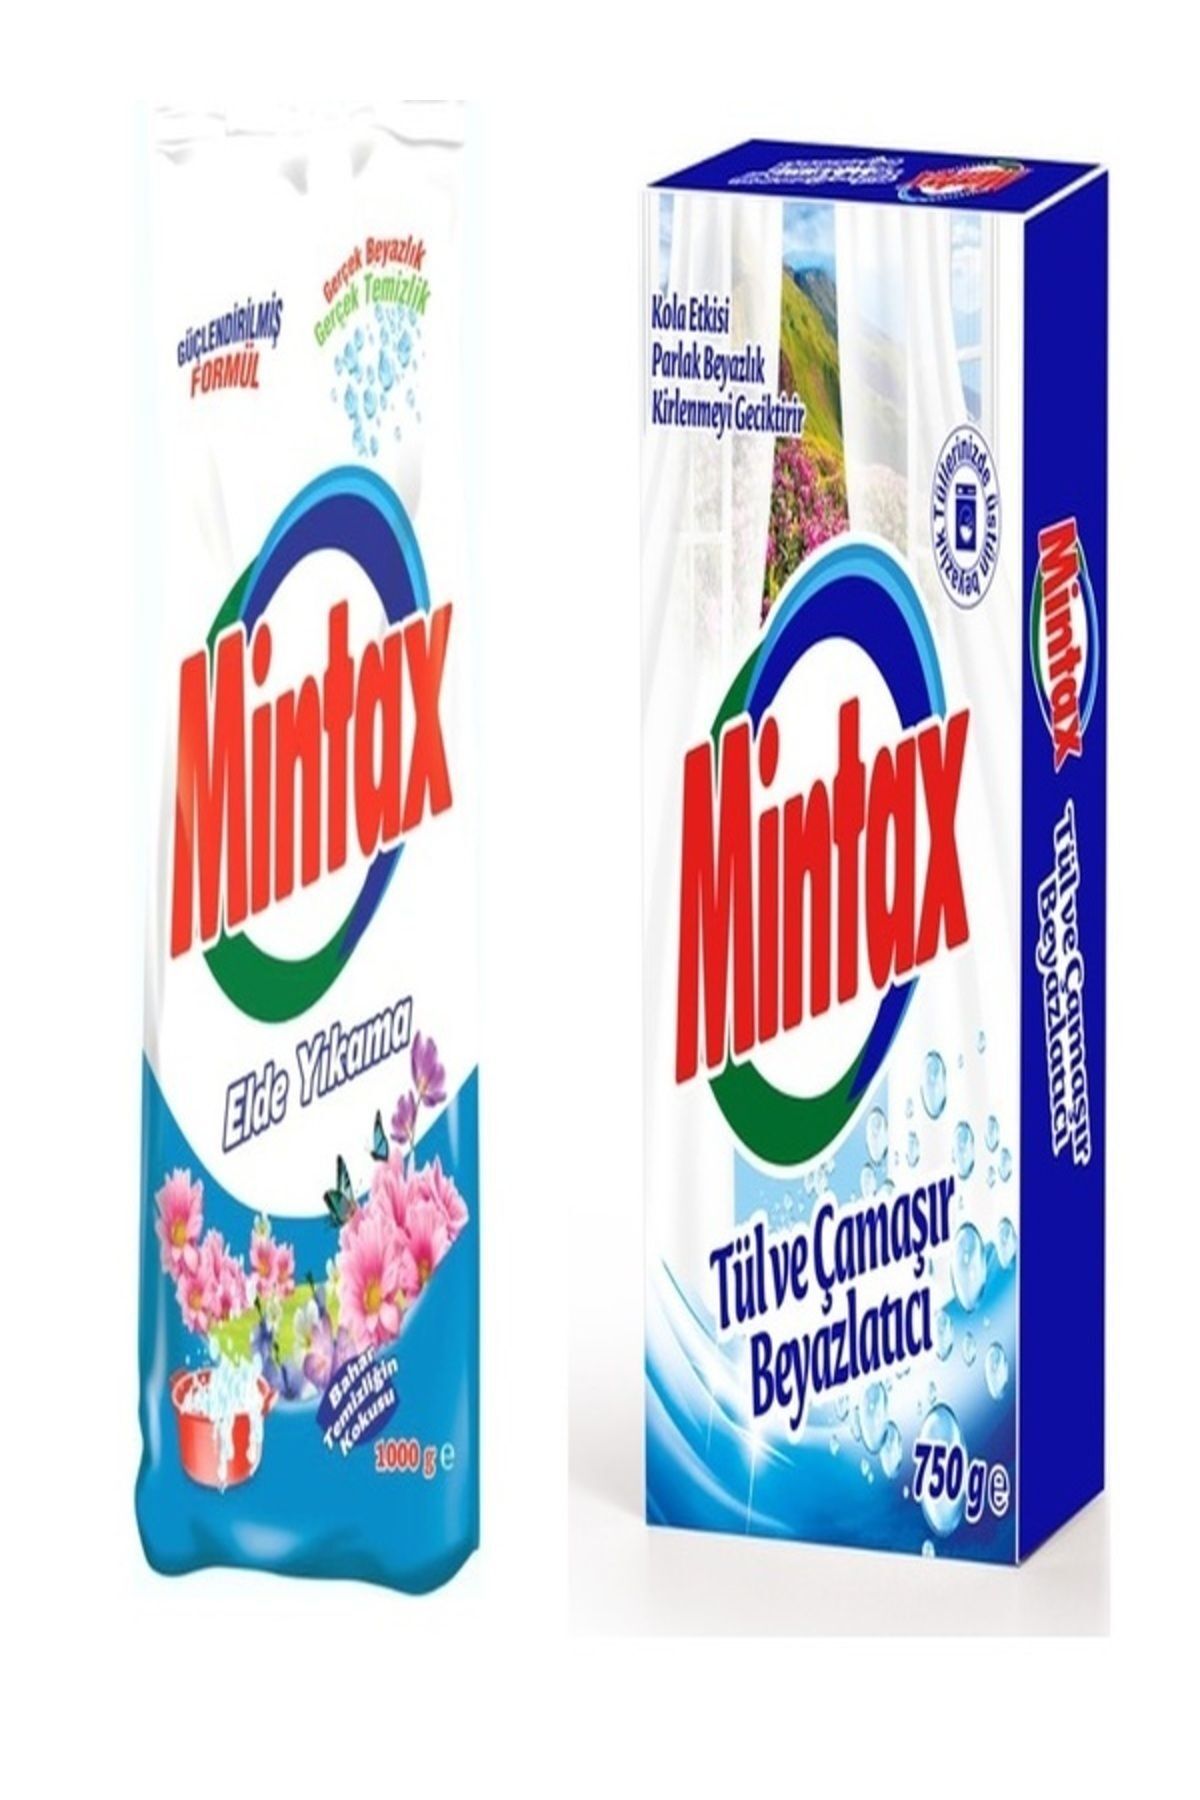 Mintax Elde Yıkama Toz Deterjan 1 kg + Mintax Tül ve Çamaşır Beyazlatıcı 750 gr